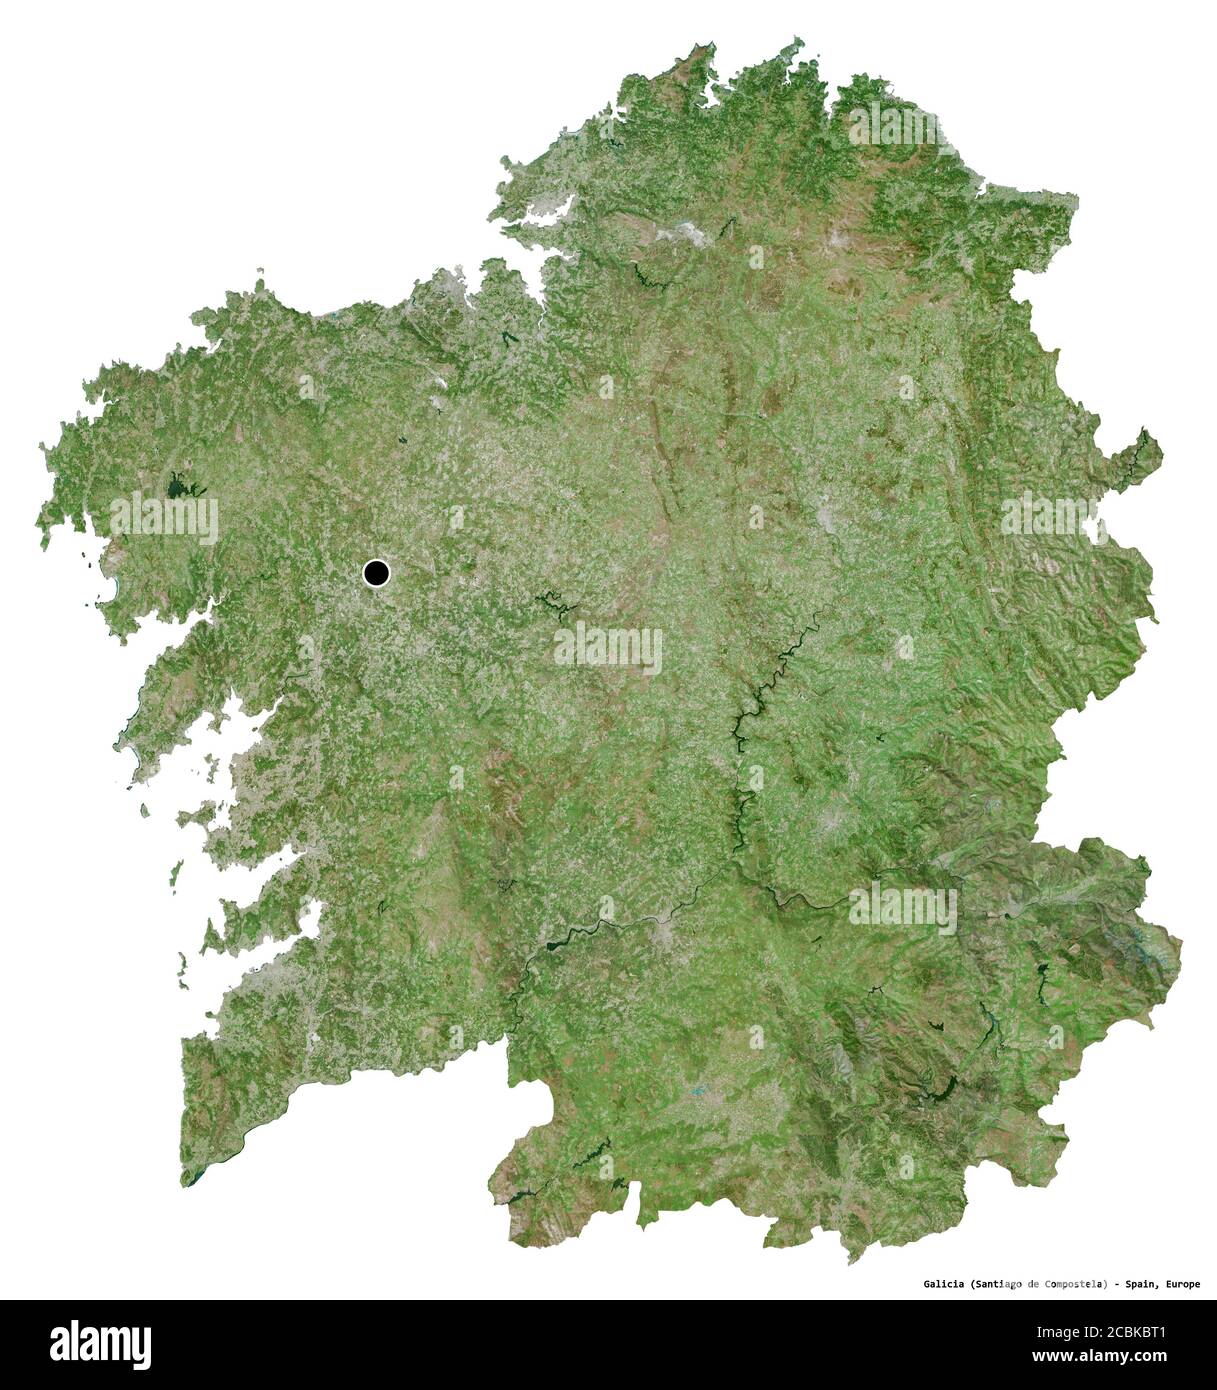 Forme de la Galice, communauté autonome de l'Espagne, avec sa capitale isolée sur fond blanc. Imagerie satellite. Rendu 3D Banque D'Images